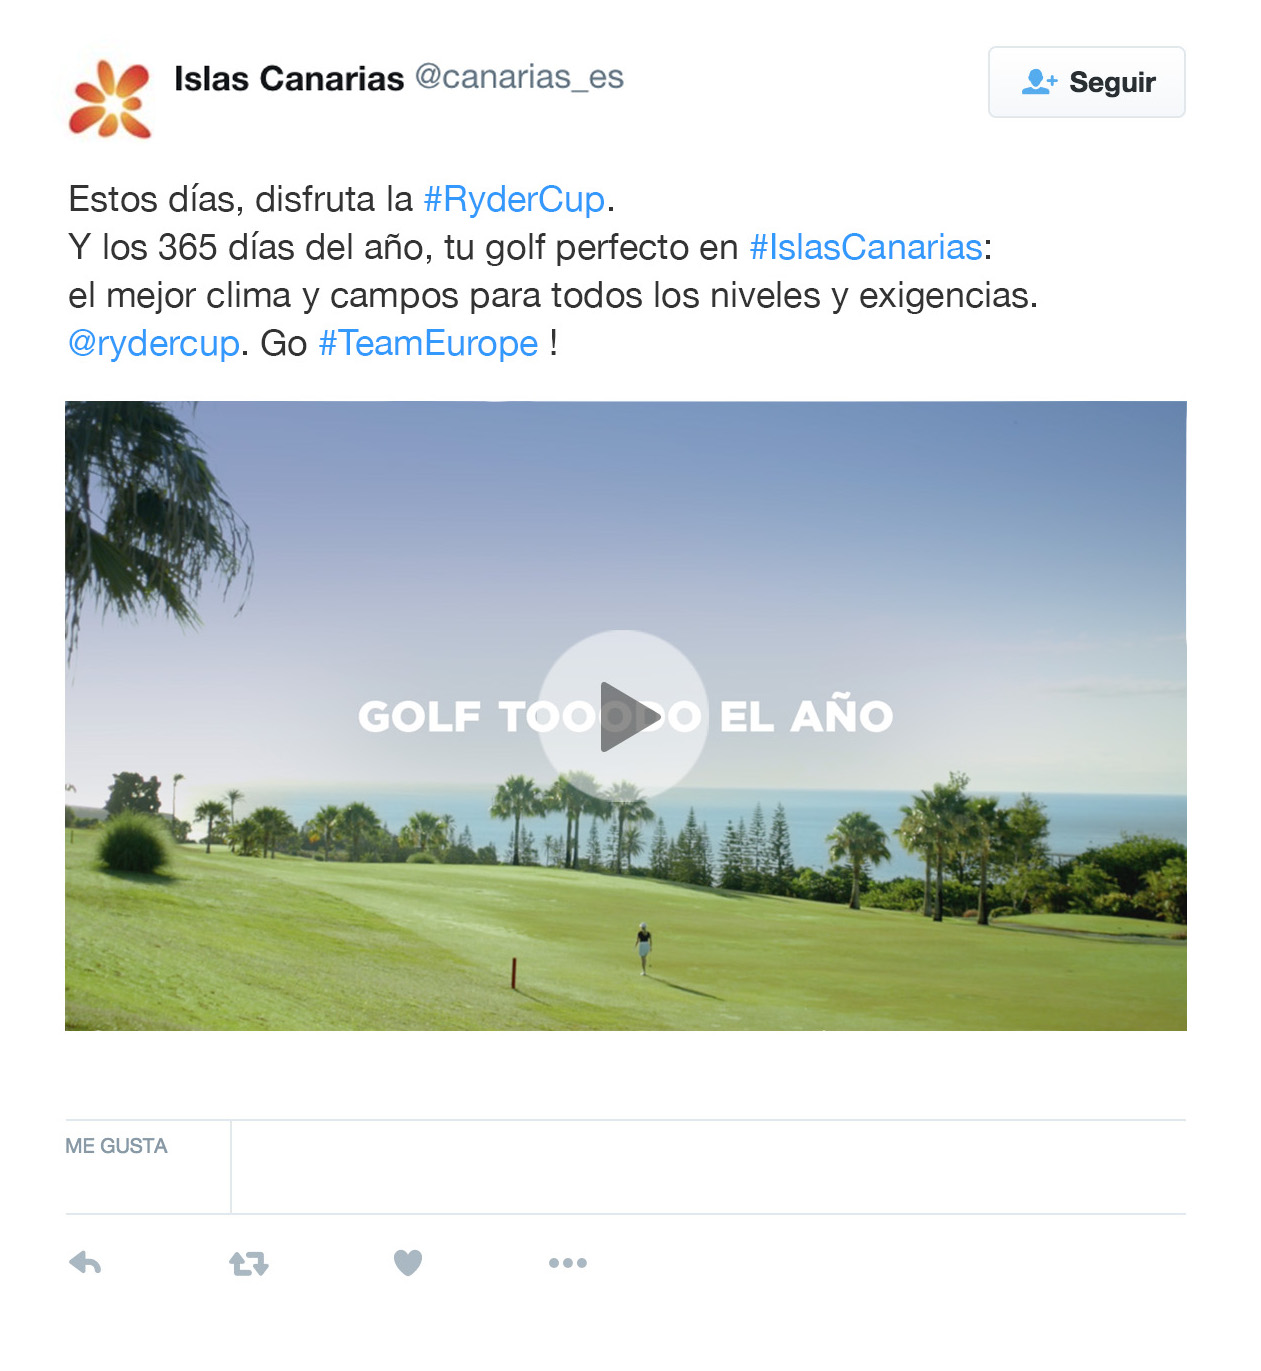 Imagen de uno de los tuits de la campaña de Islas Canarias dirigida a los turistas de golf durante la celebración de la Ryder Cup 2018